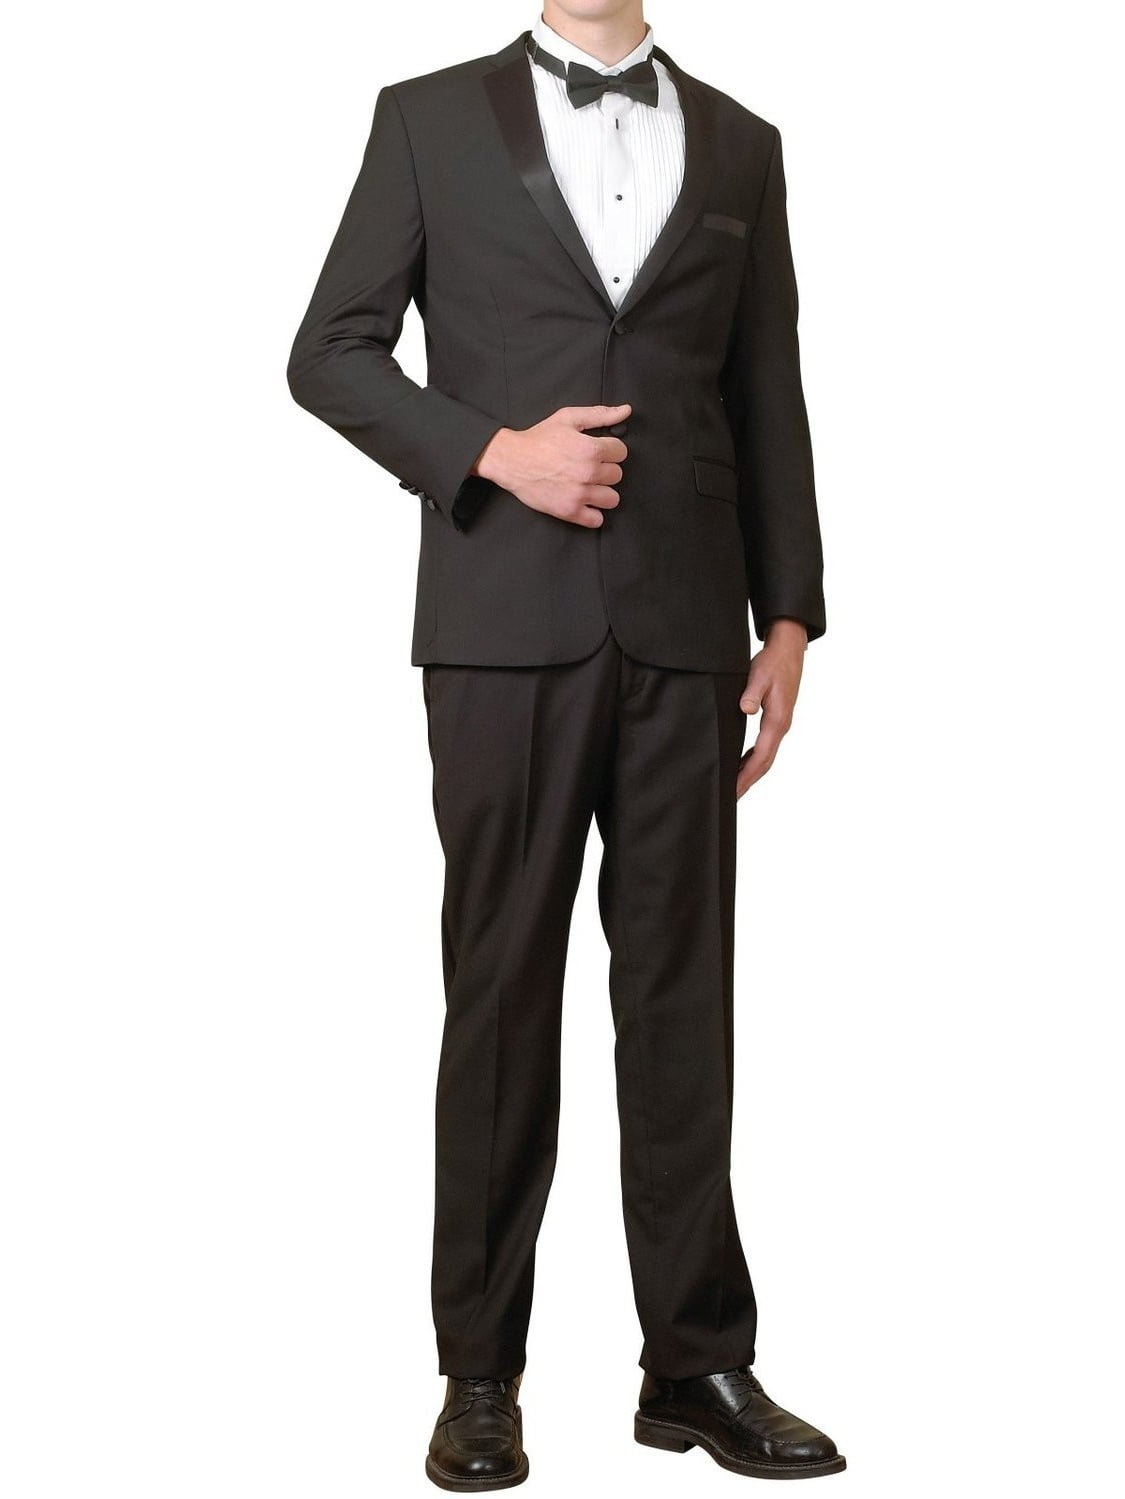 New Mens 5 Pc Complete Black Tuxedo Suit Jacket Pants Shirt Cummerbund Bow Tie 